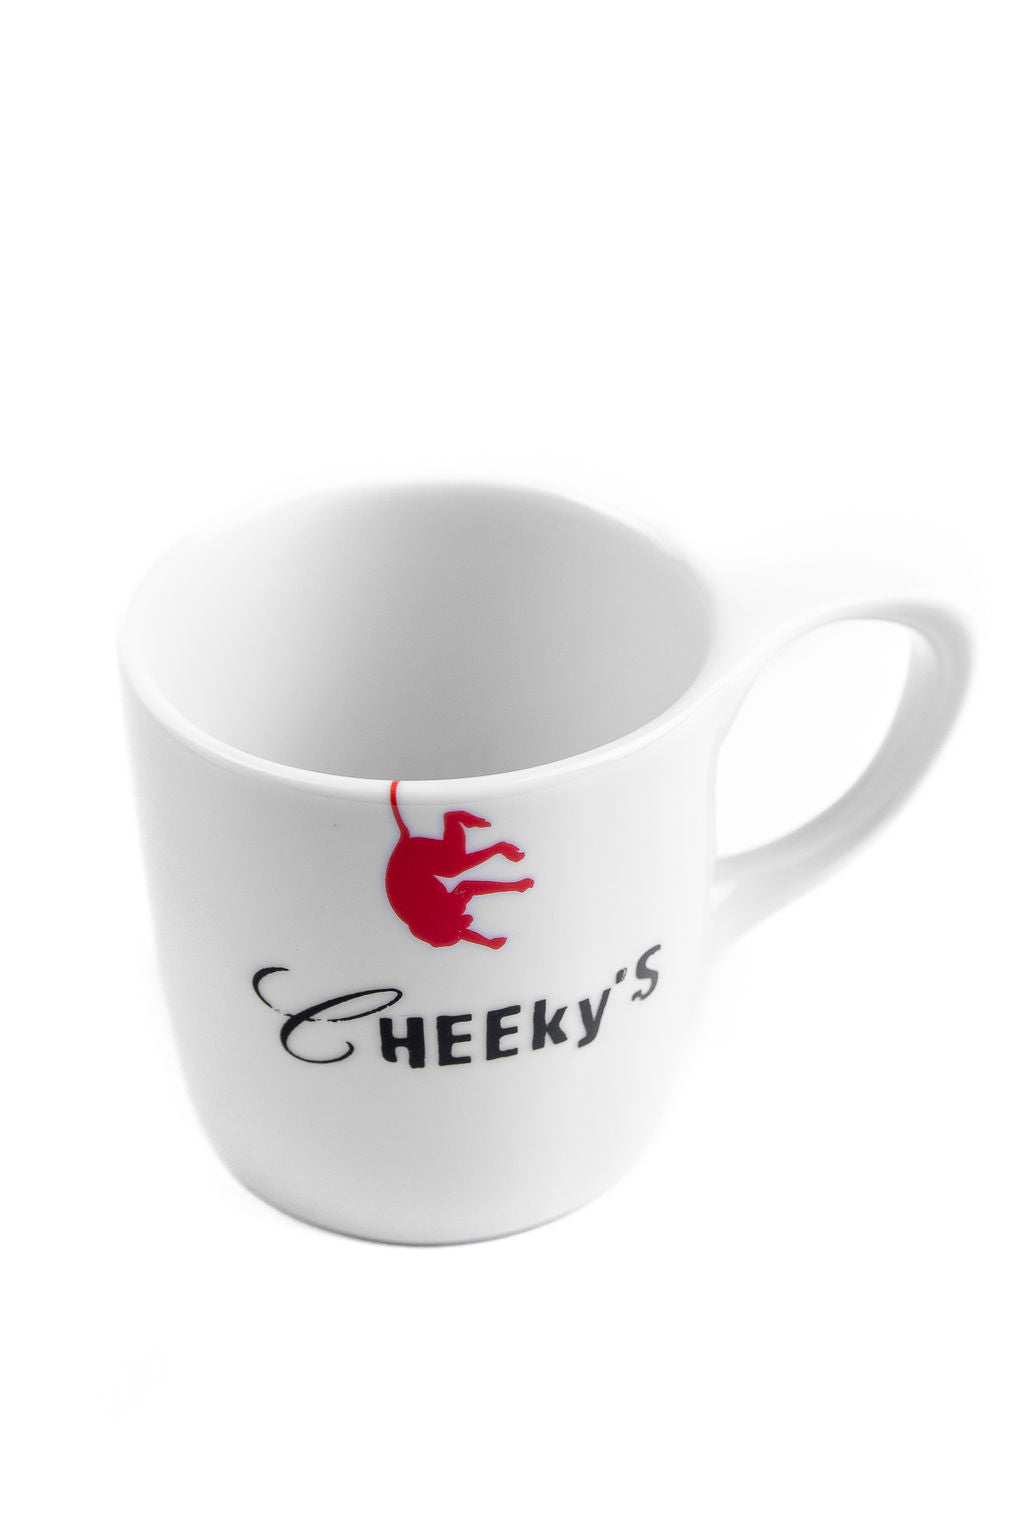 Cheeky's Coffee Mug